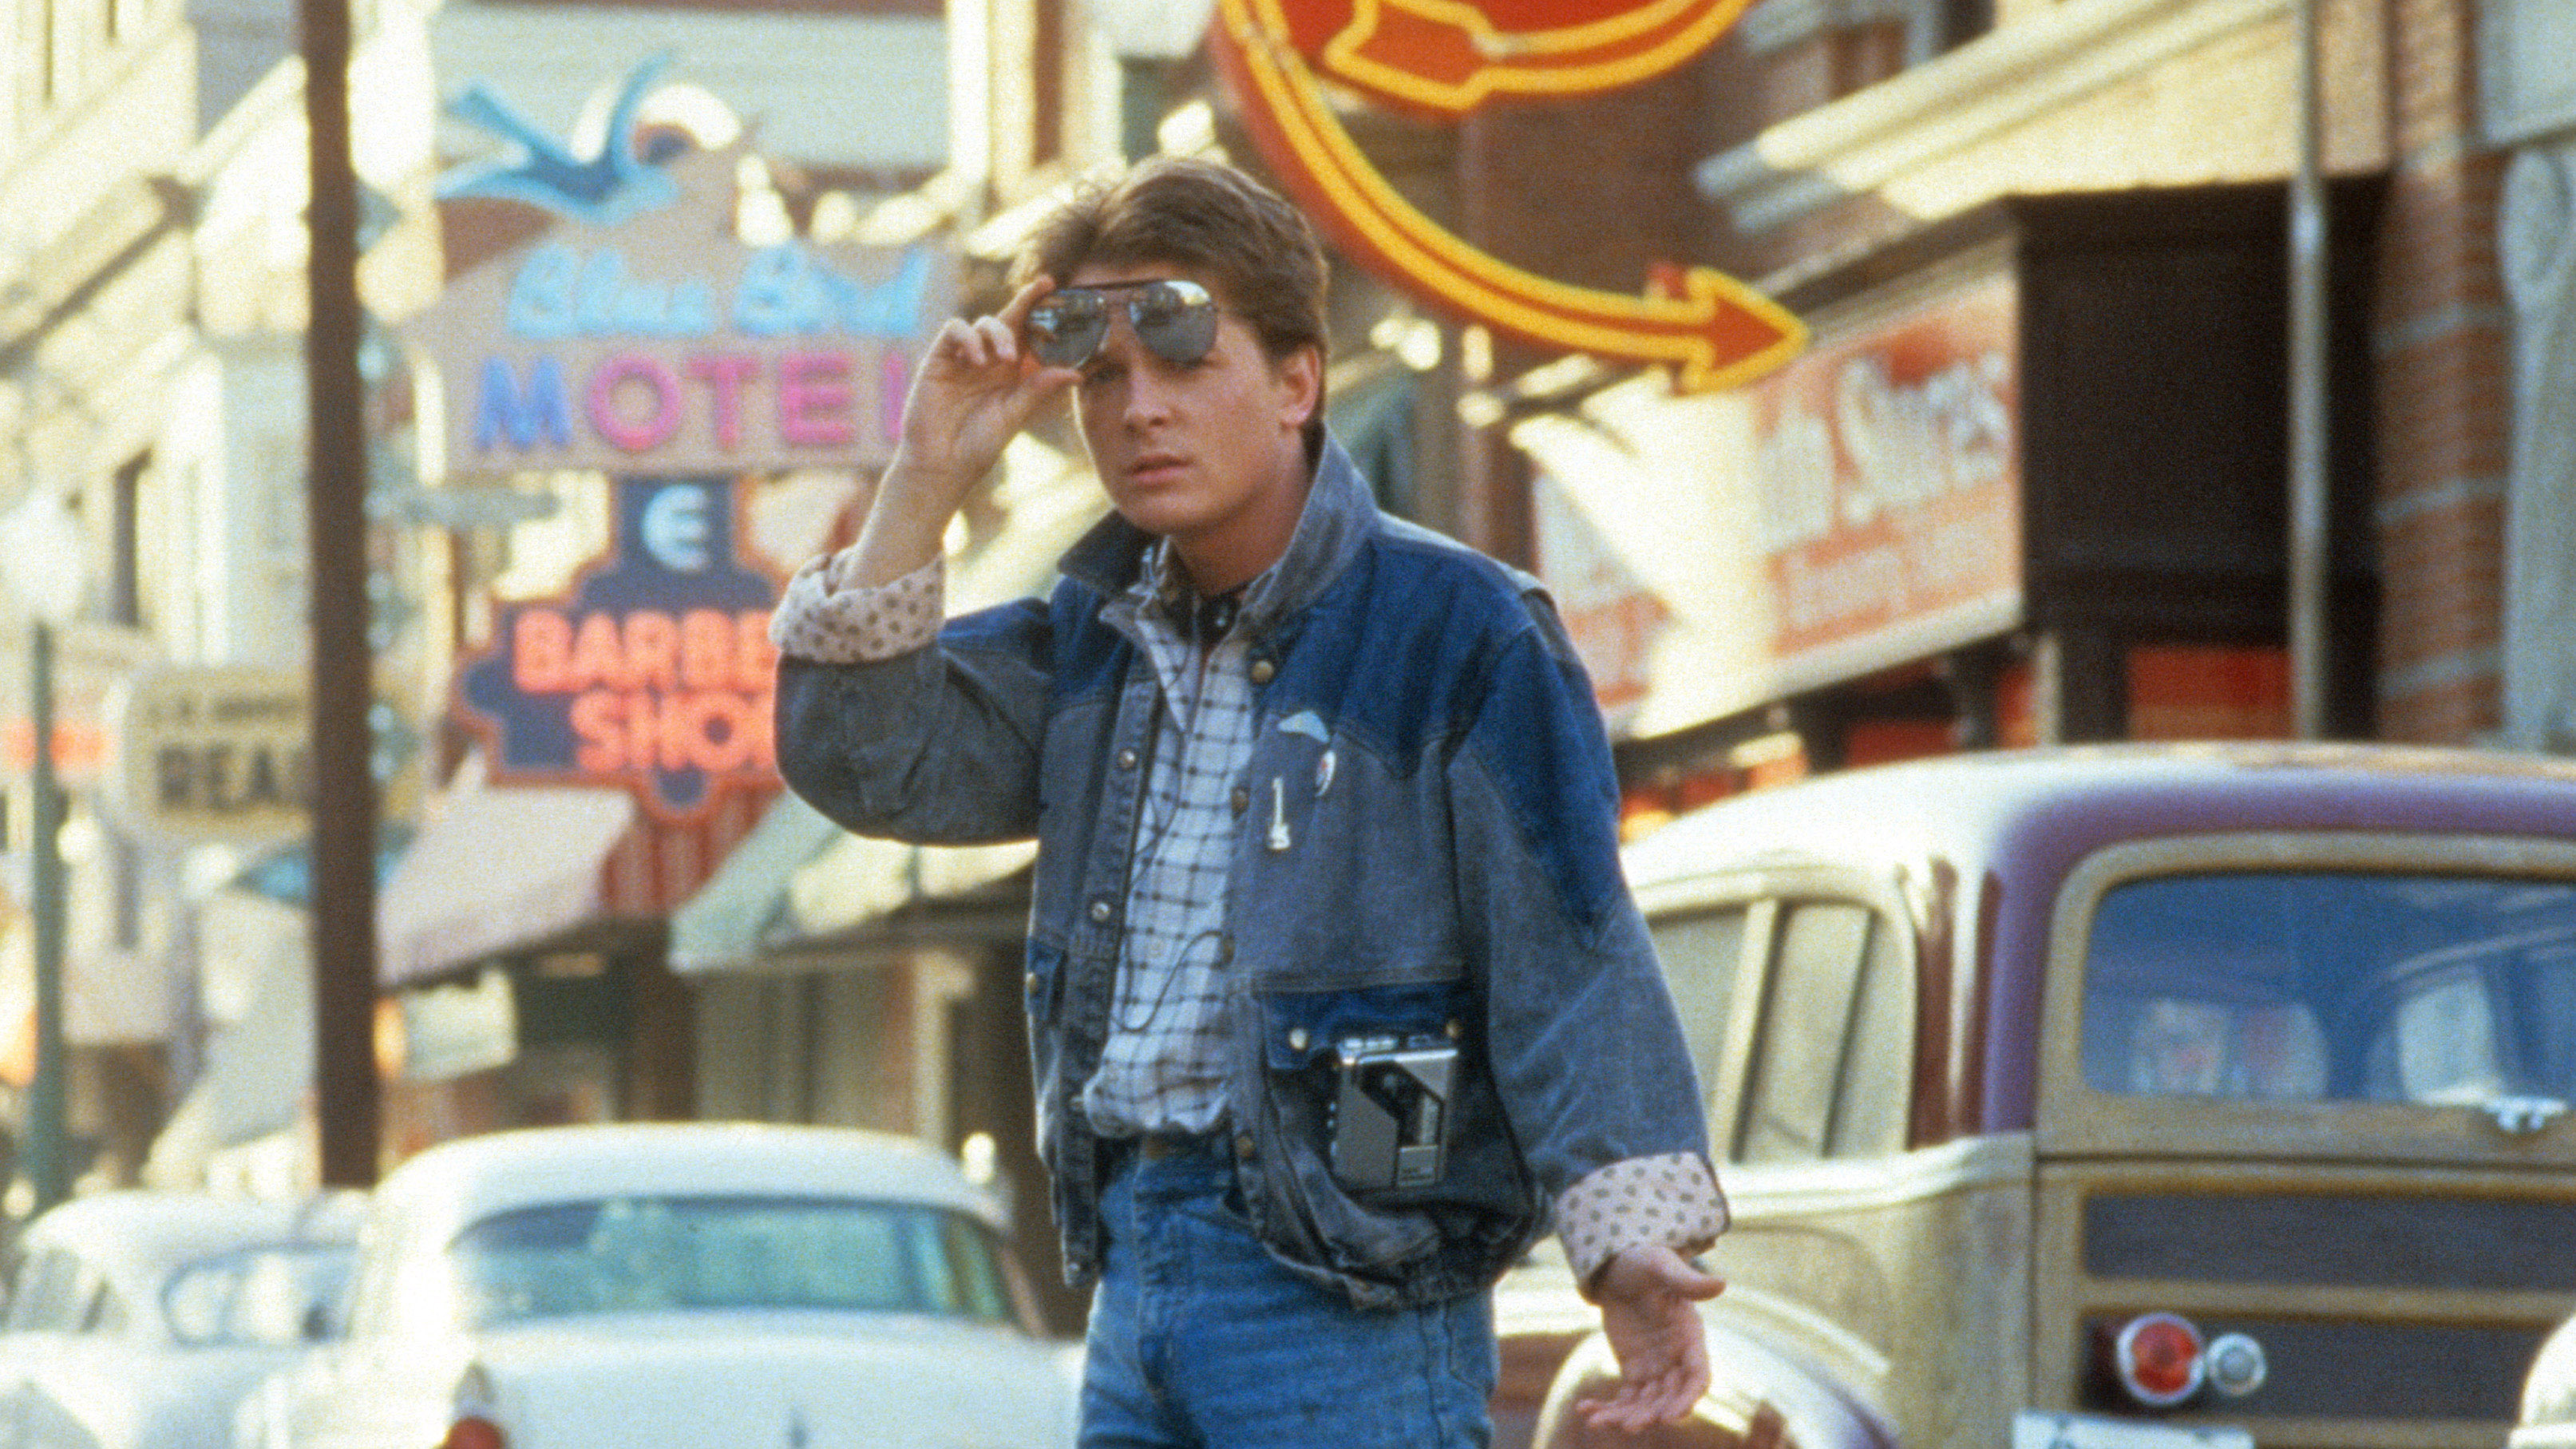 Michael J Fox dans le rôle de Marty McFly traversant la rue dans une scène du film 